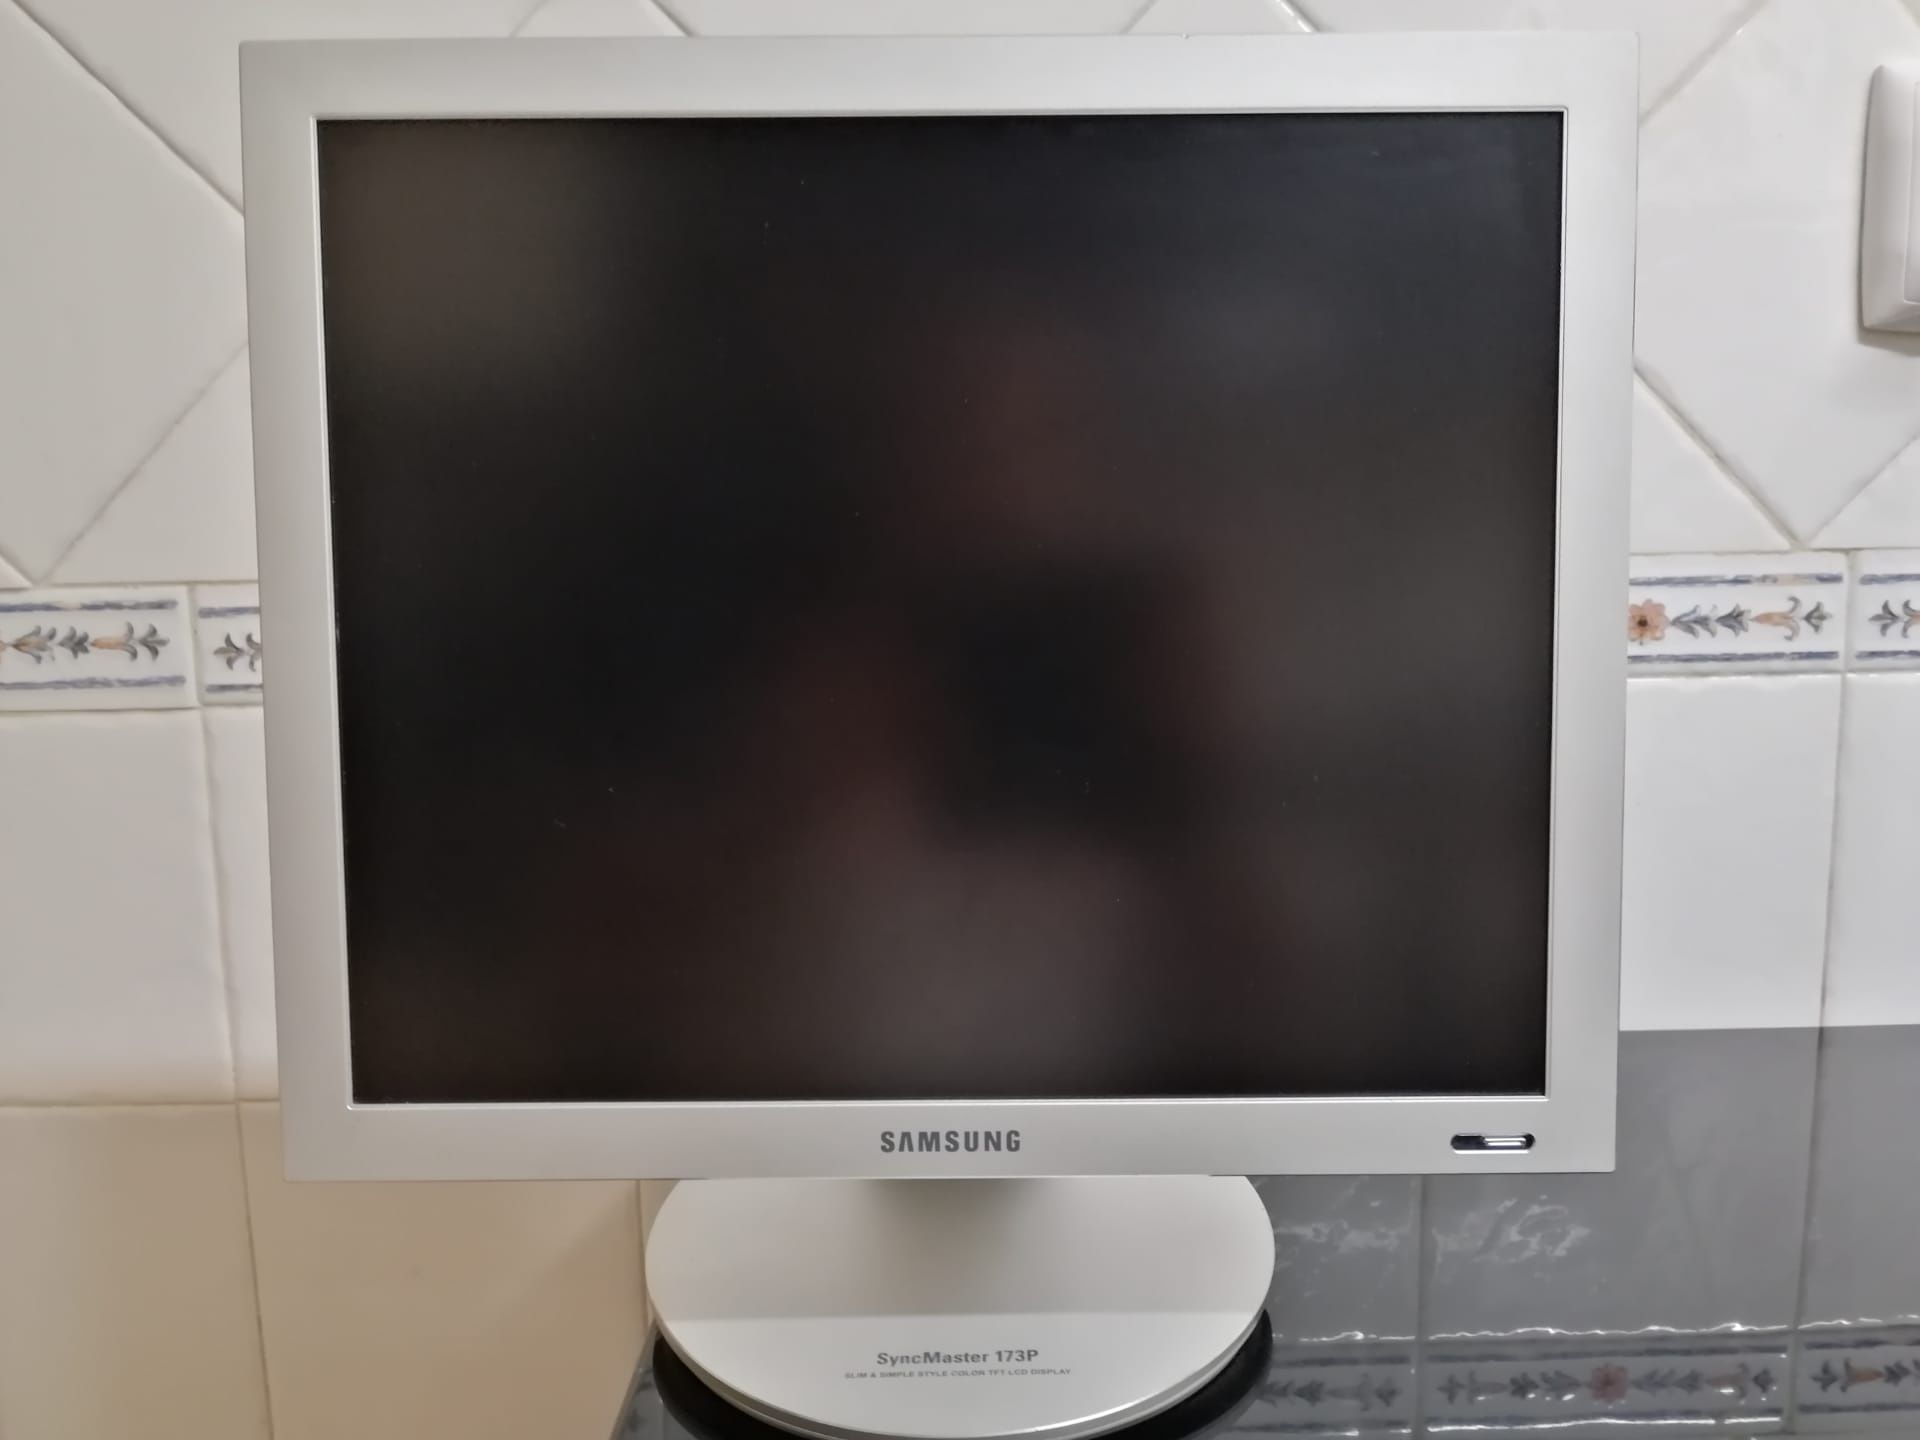 Monitor Samsung LCD 17"